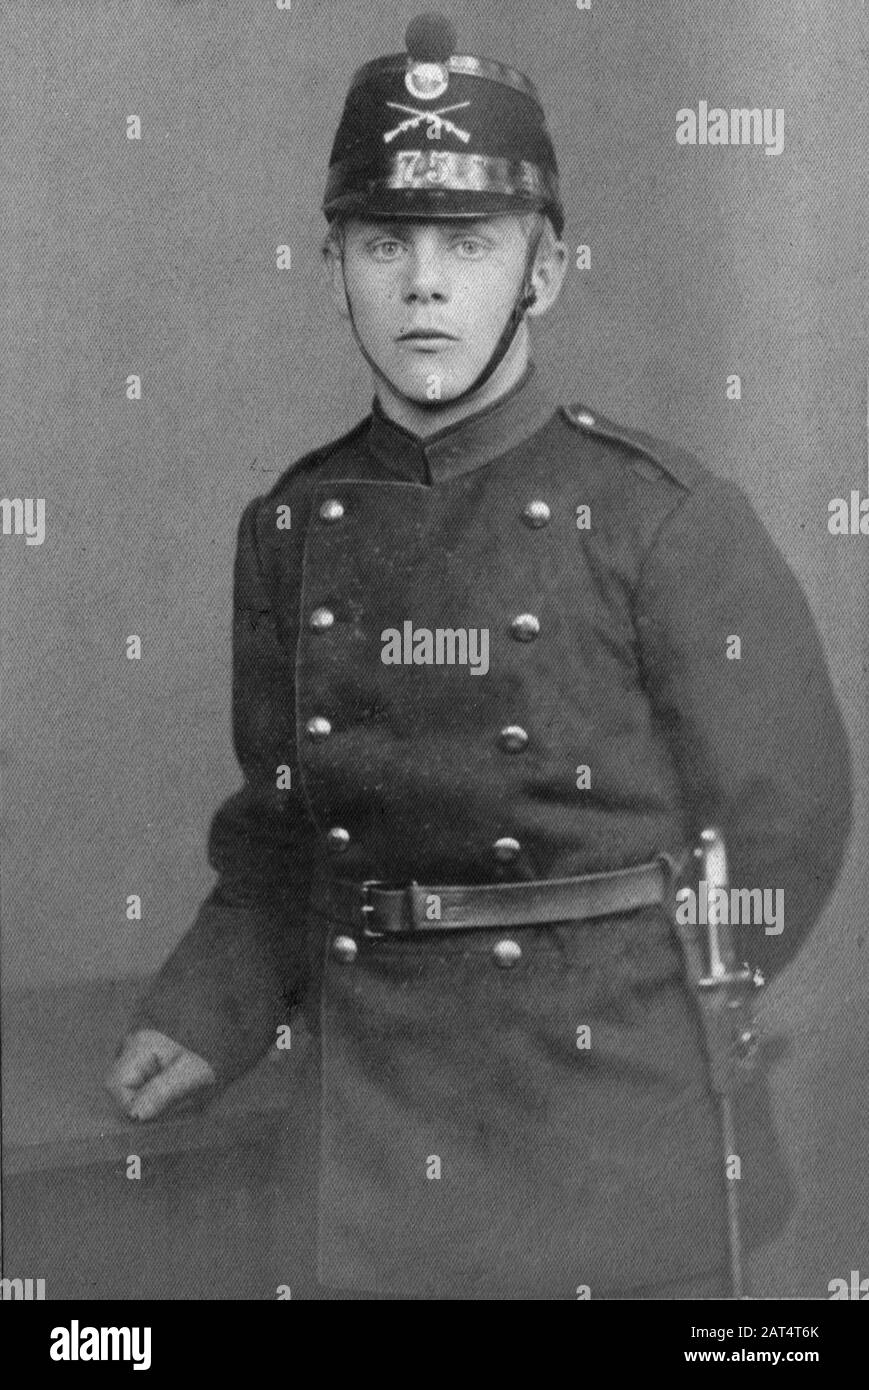 Soldat suisse 75ème régiment d'infanterie c. 1900 Banque D'Images